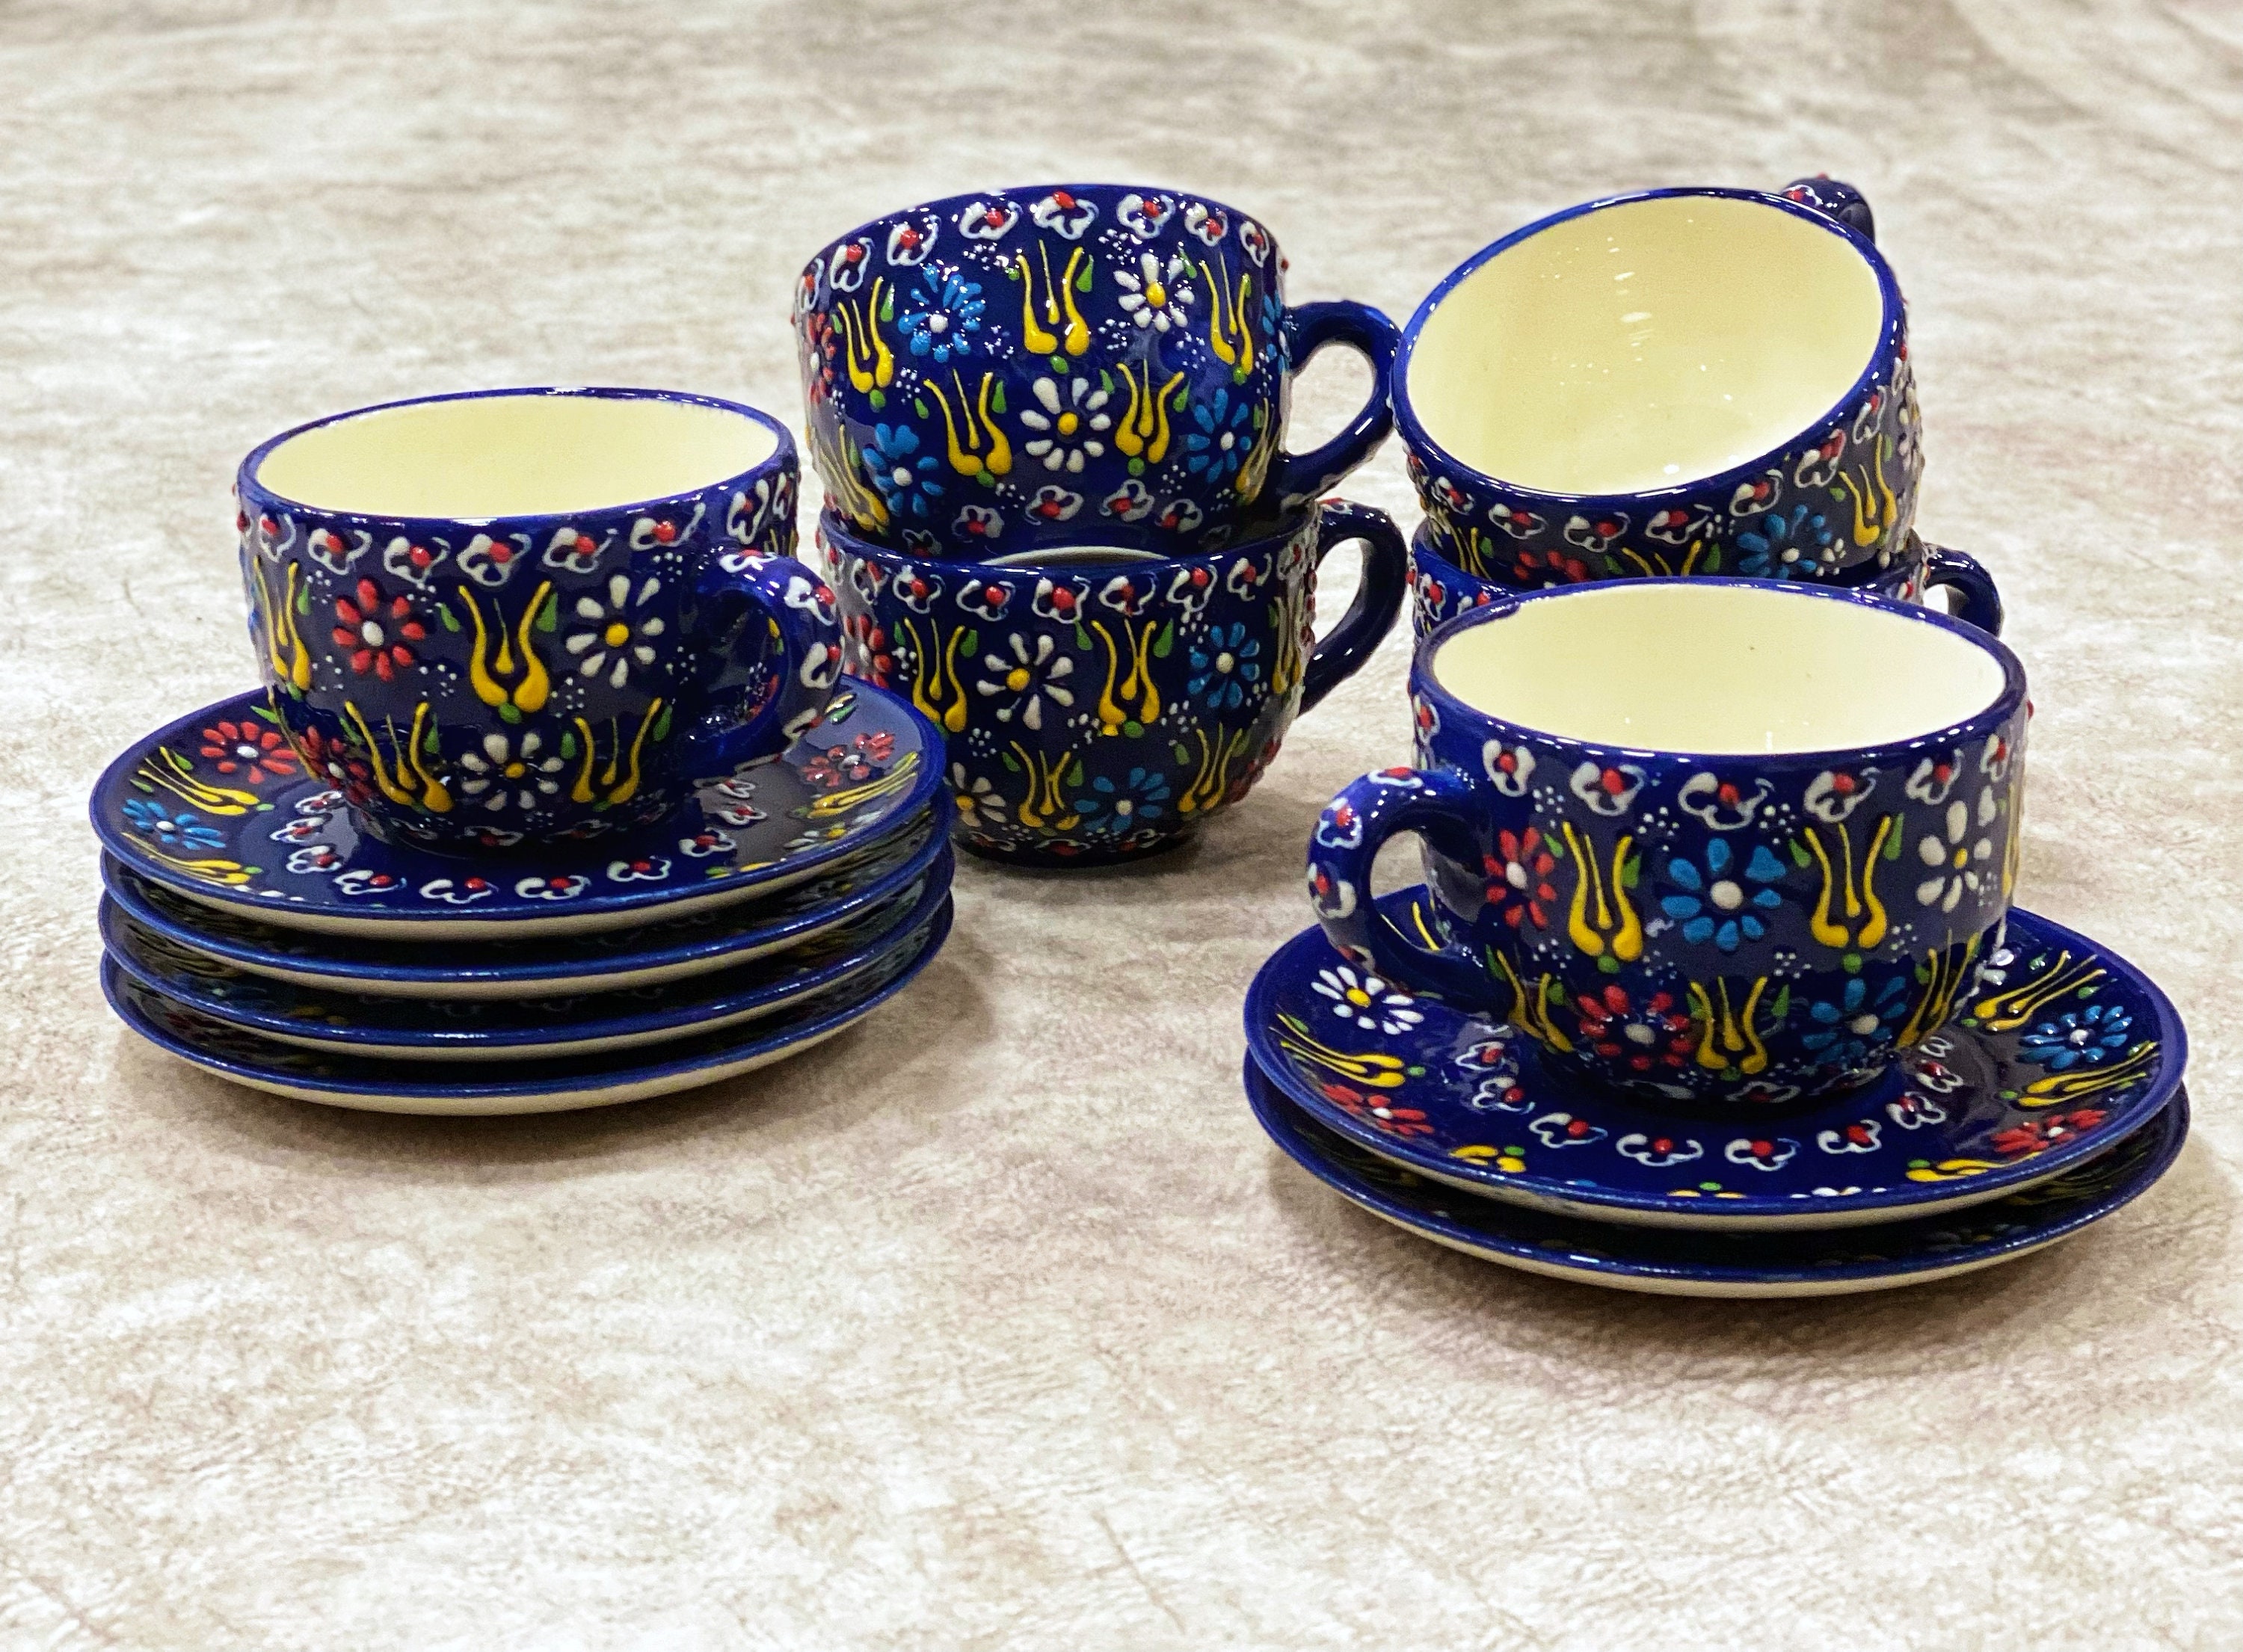  TRSPCWR Juego de 6 tazas de café expreso, juego de tazas de té  de café de cerámica de 2.5 onzas con soporte y servicio de platillo, taza  de café turco para